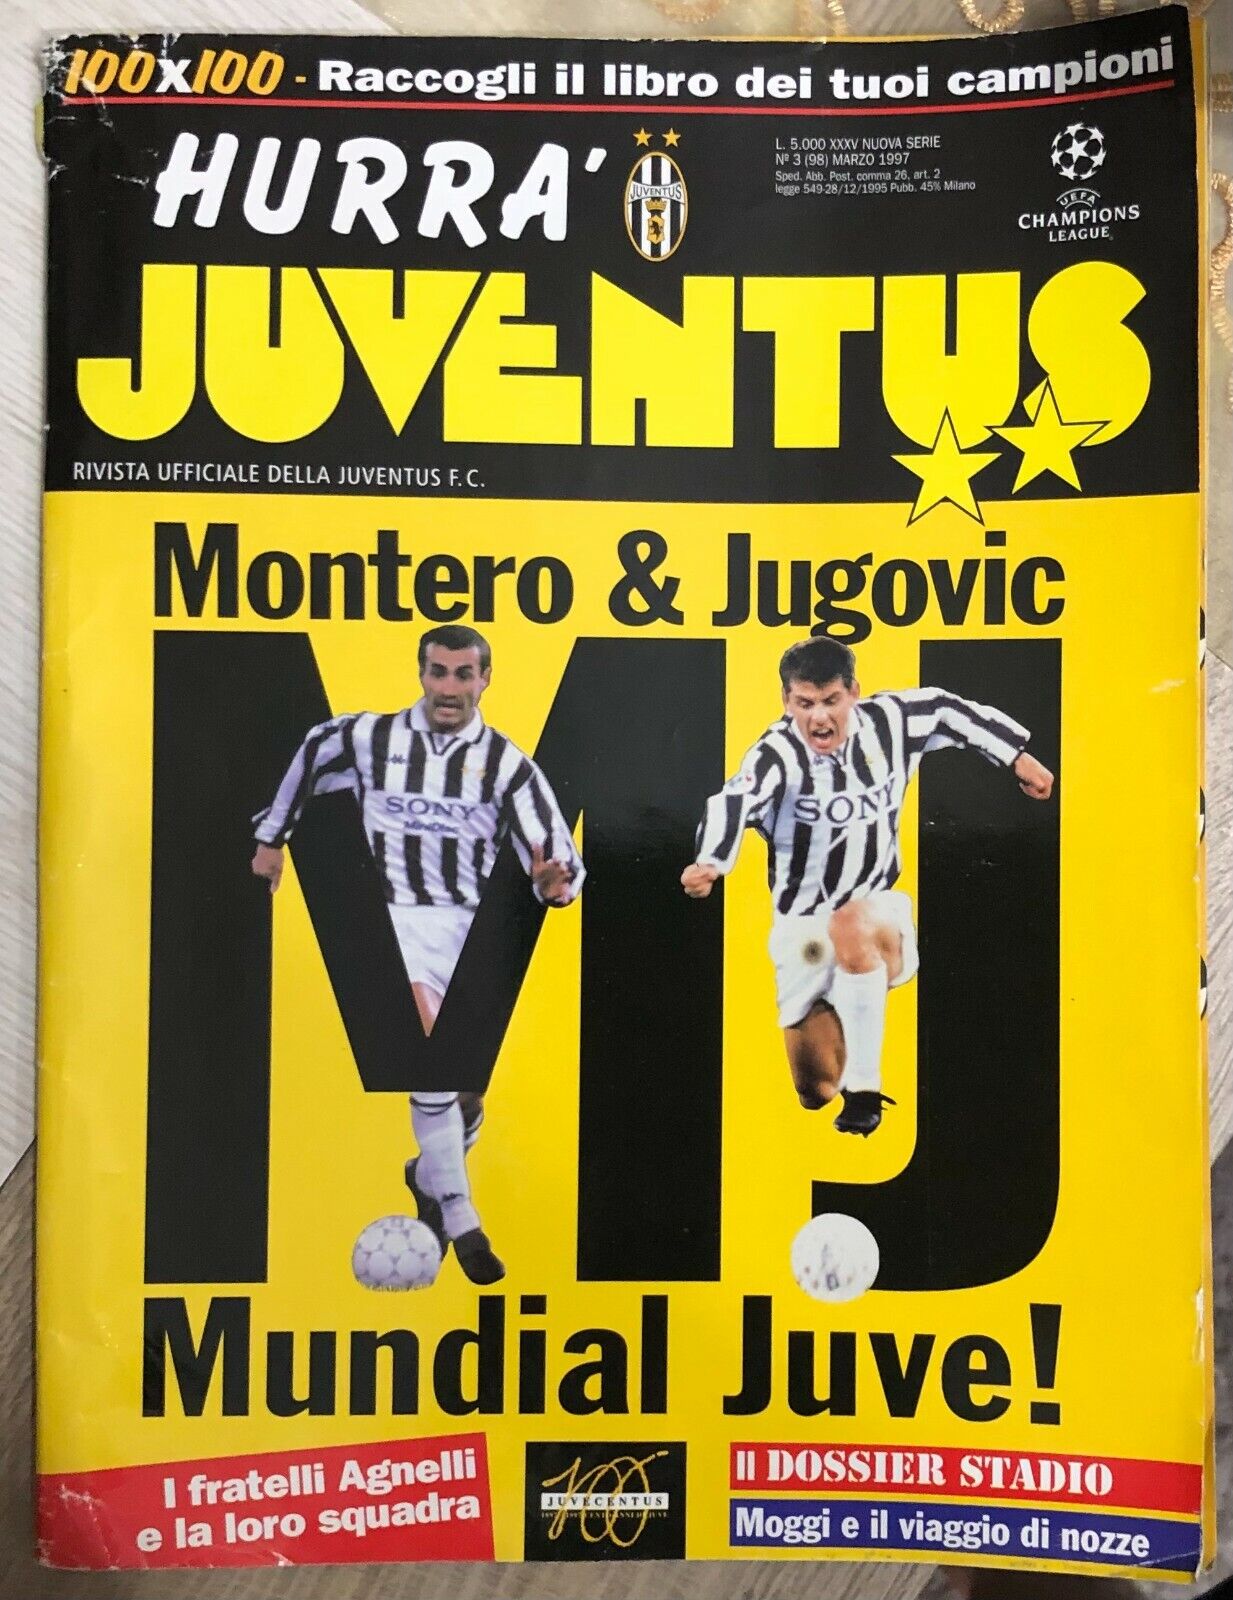 Hurr? Juventus n. 3/1997 di Aa.vv.,  1997,  Juventus F.c.